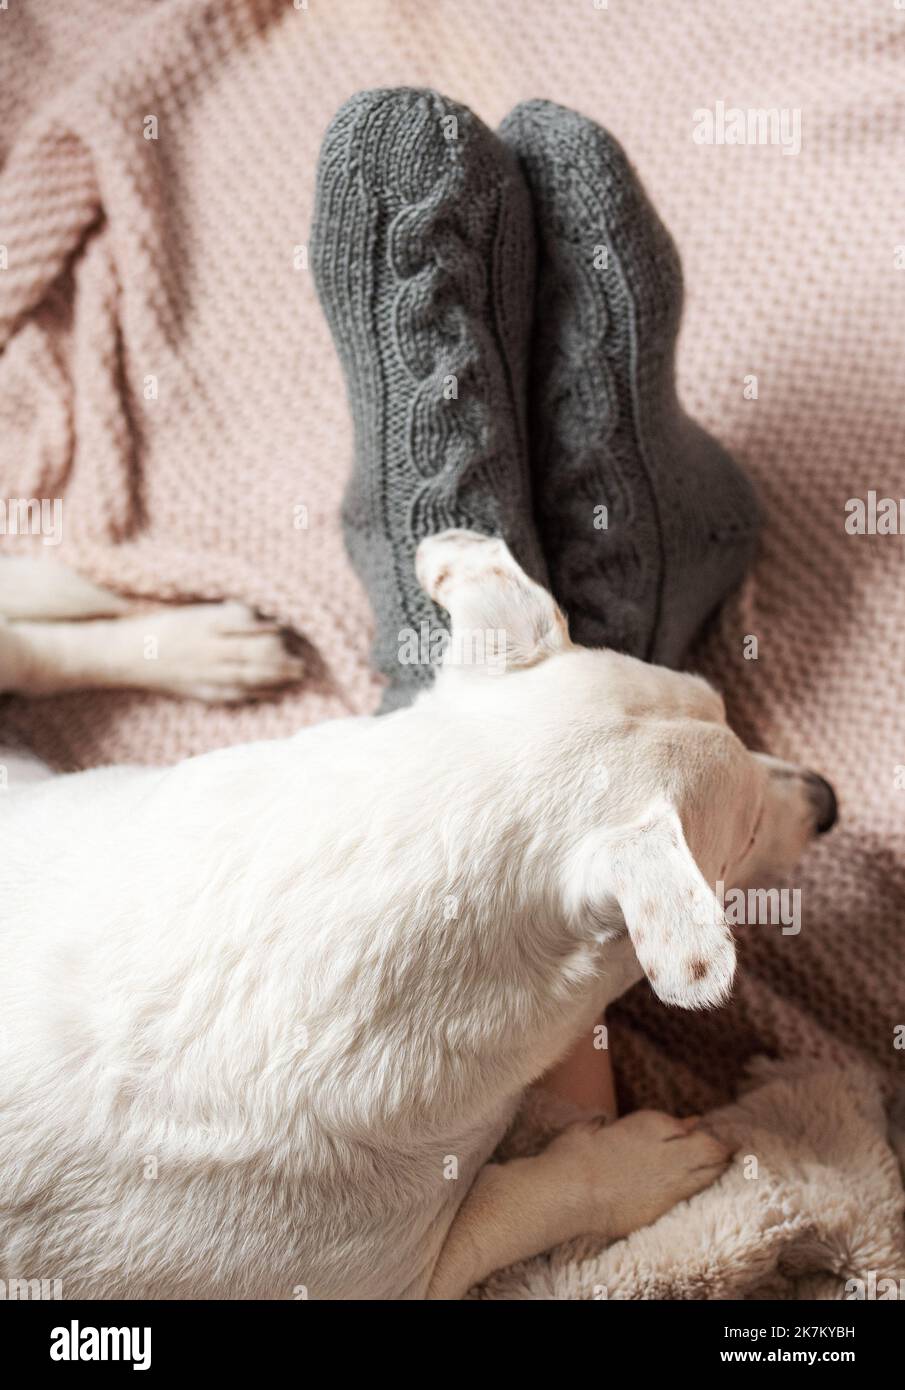 Piernas de una niña en calcetines abrigados de punto. Piernas femeninas en calcetines cálidos a cuadros. El perro duerme al lado de la chica. Concepto de temporada de calefacción Foto de stock